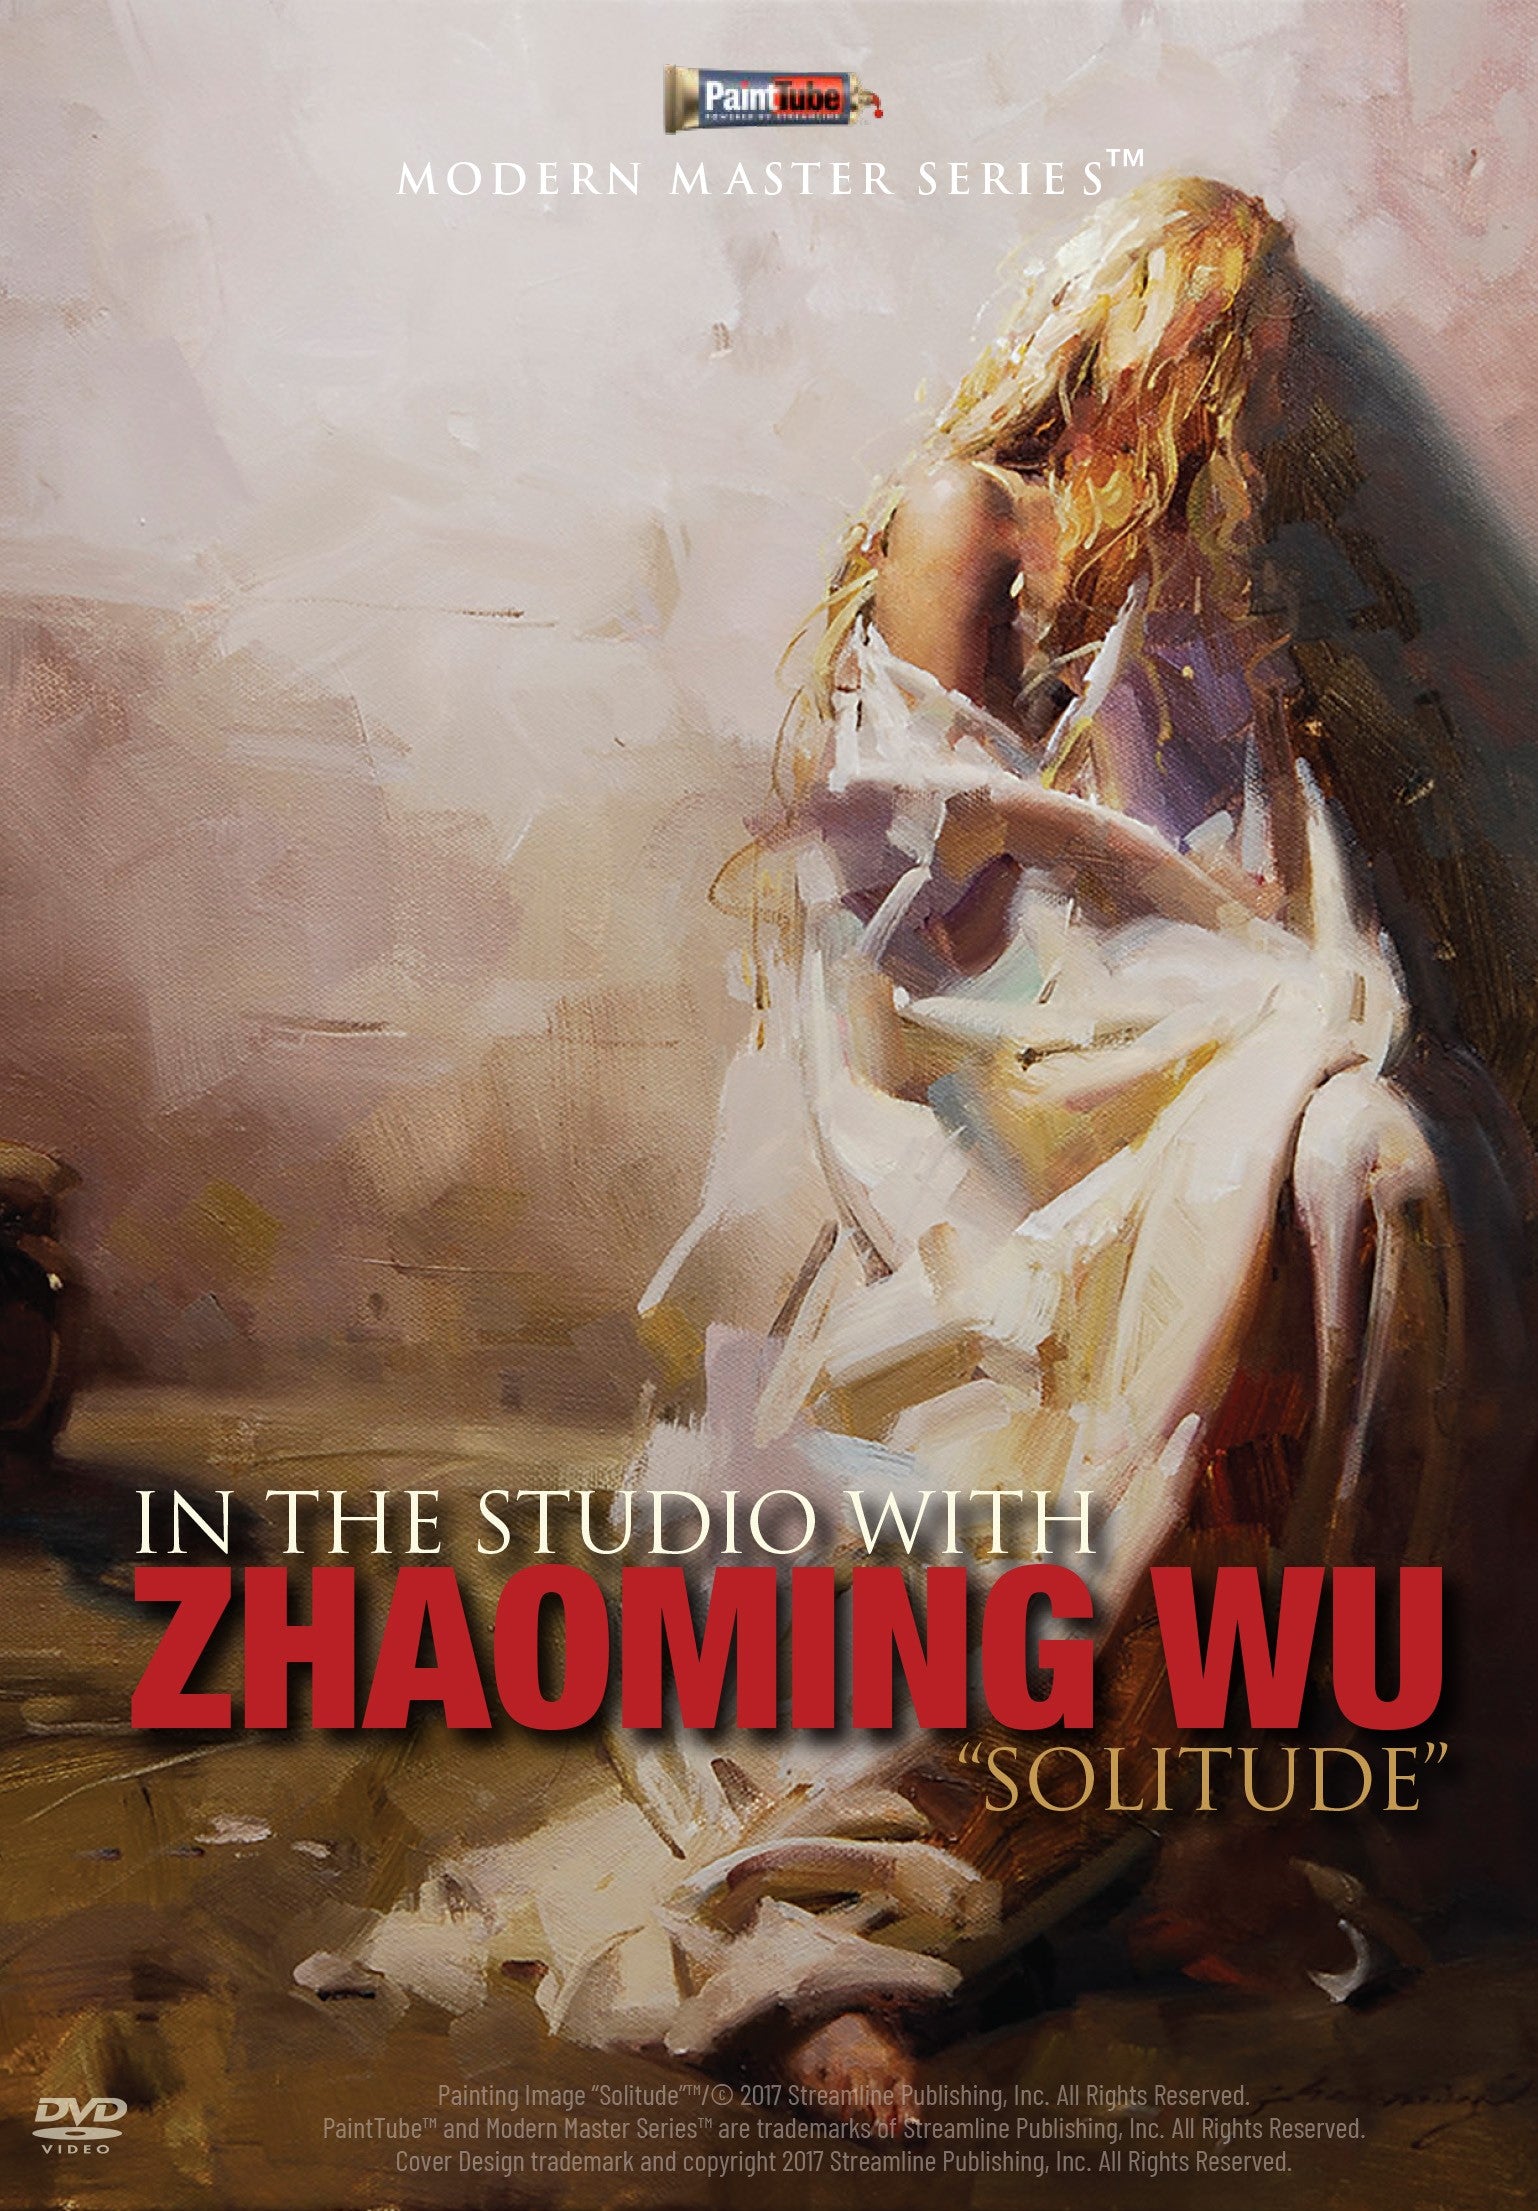 Zhaoming Wu: Solitude